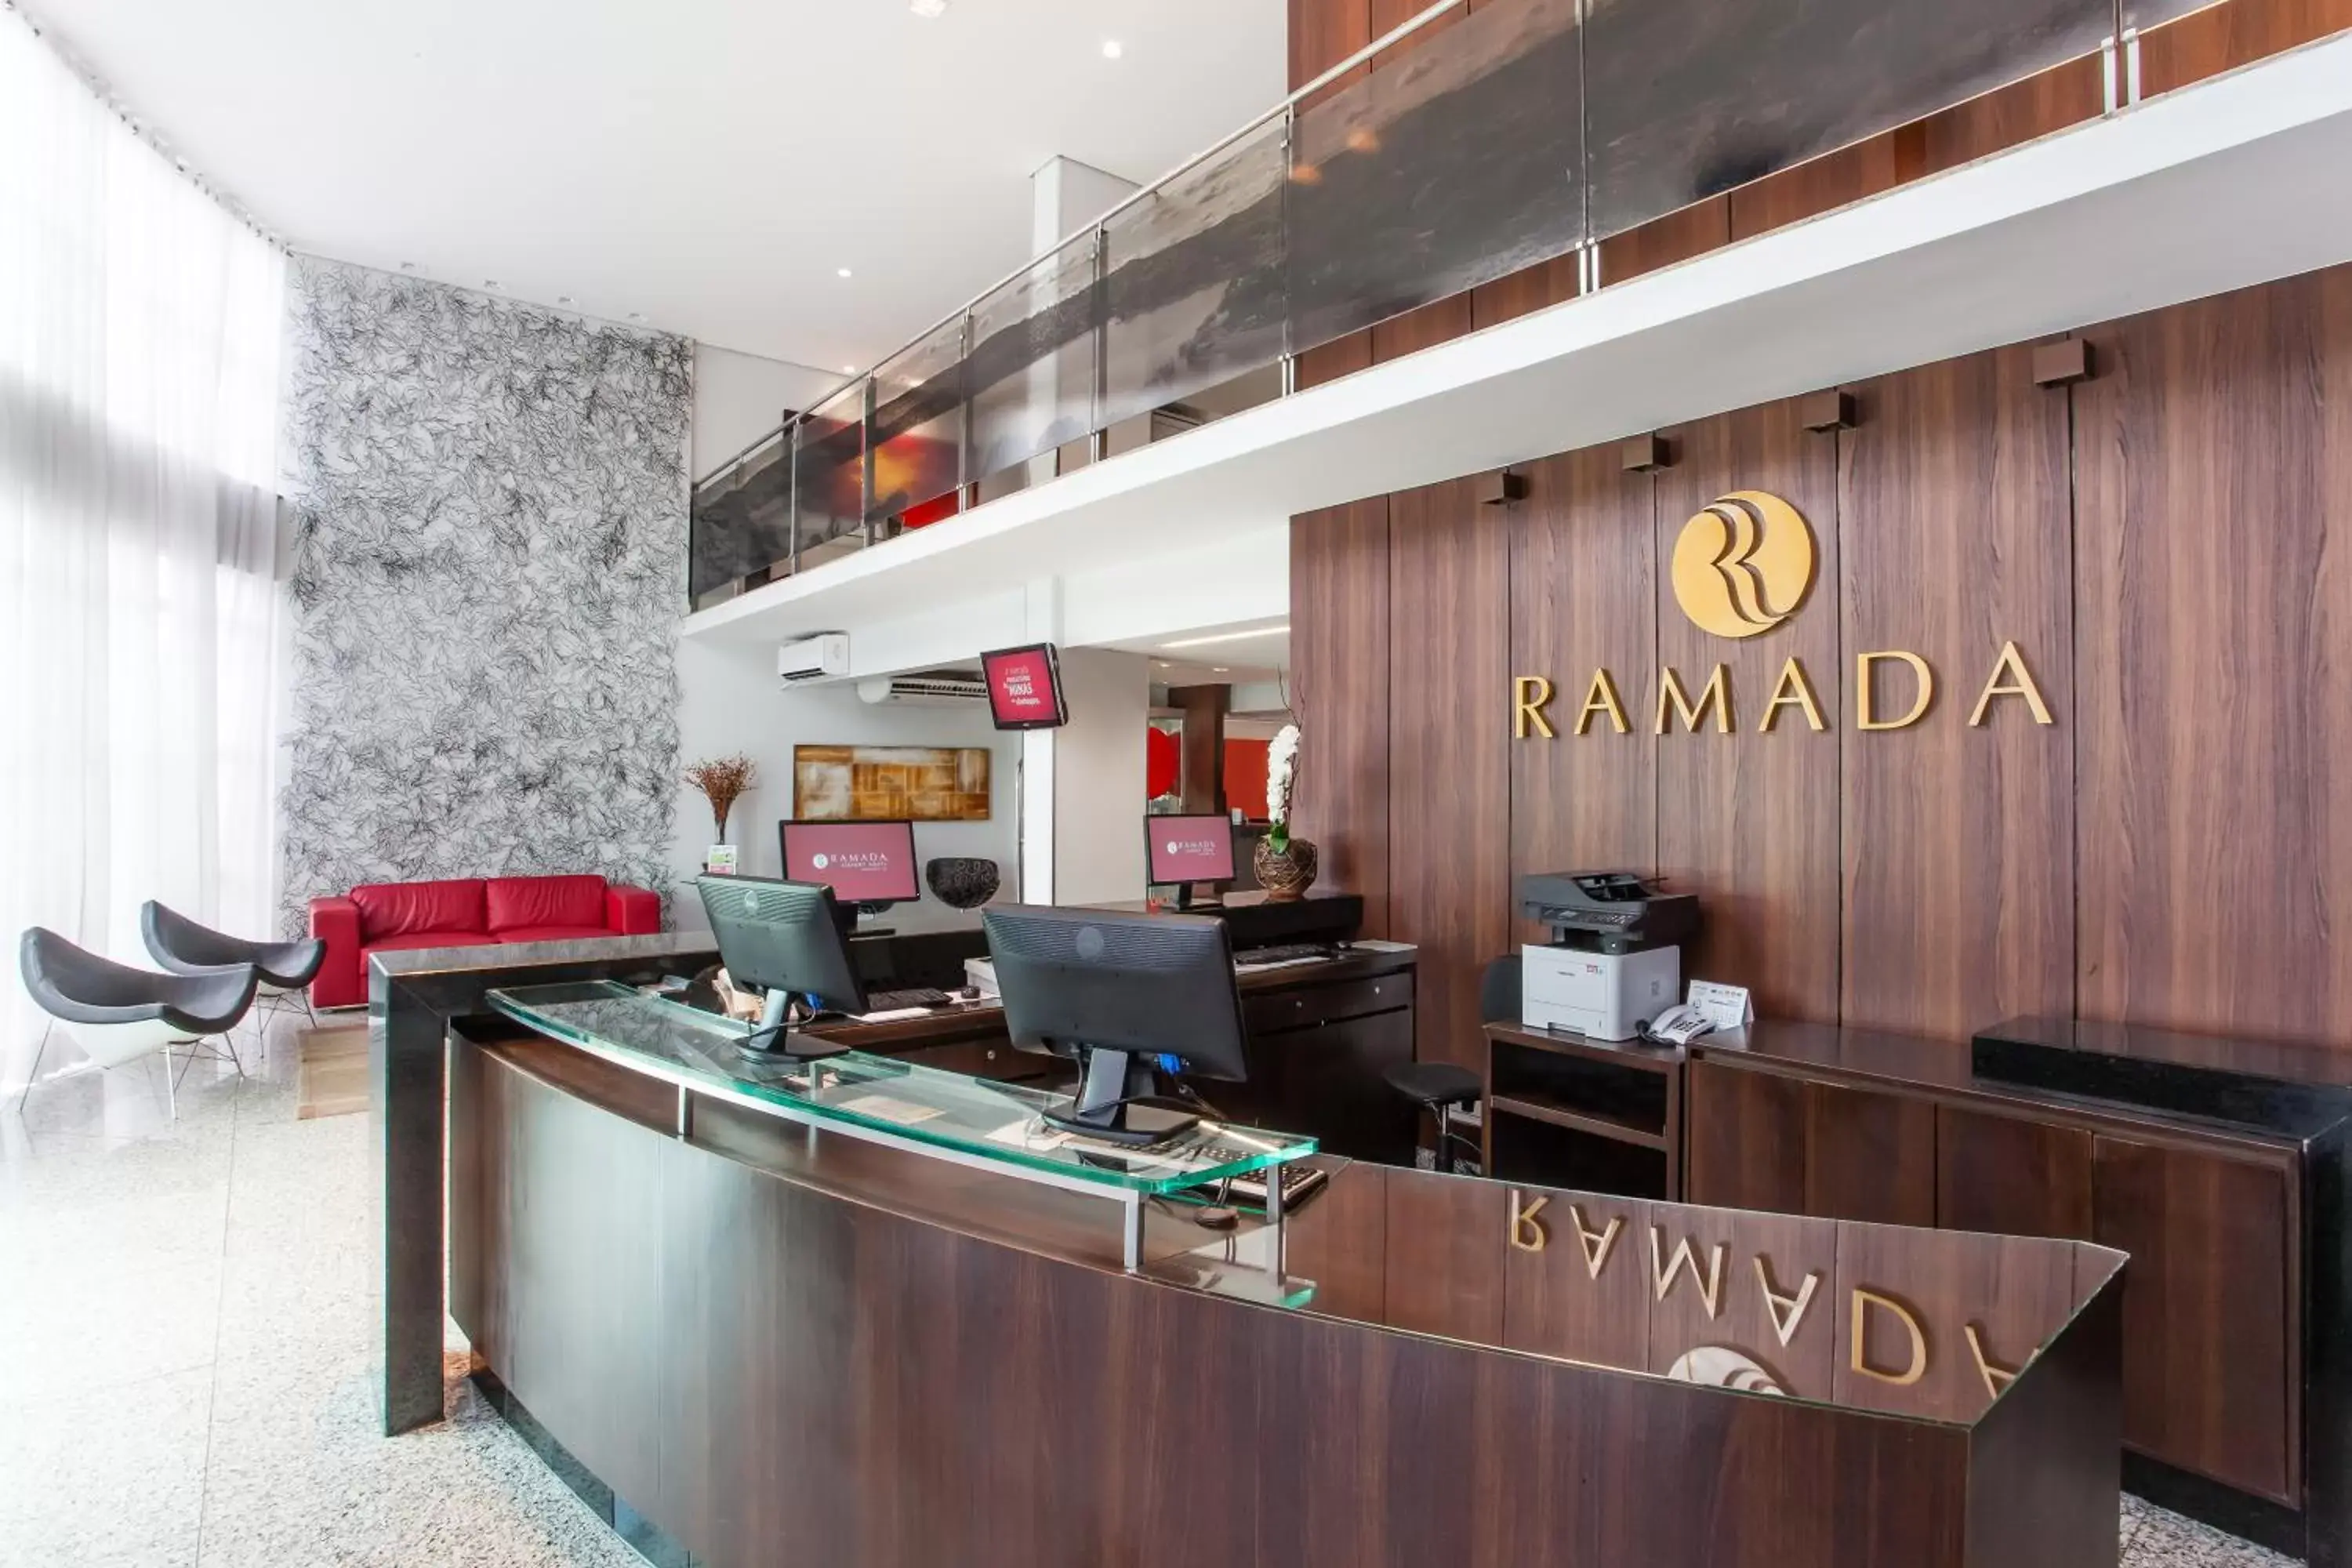 Lobby or reception, Lobby/Reception in Ramada Hotel & Suites Lagoa Santa By Wyndham